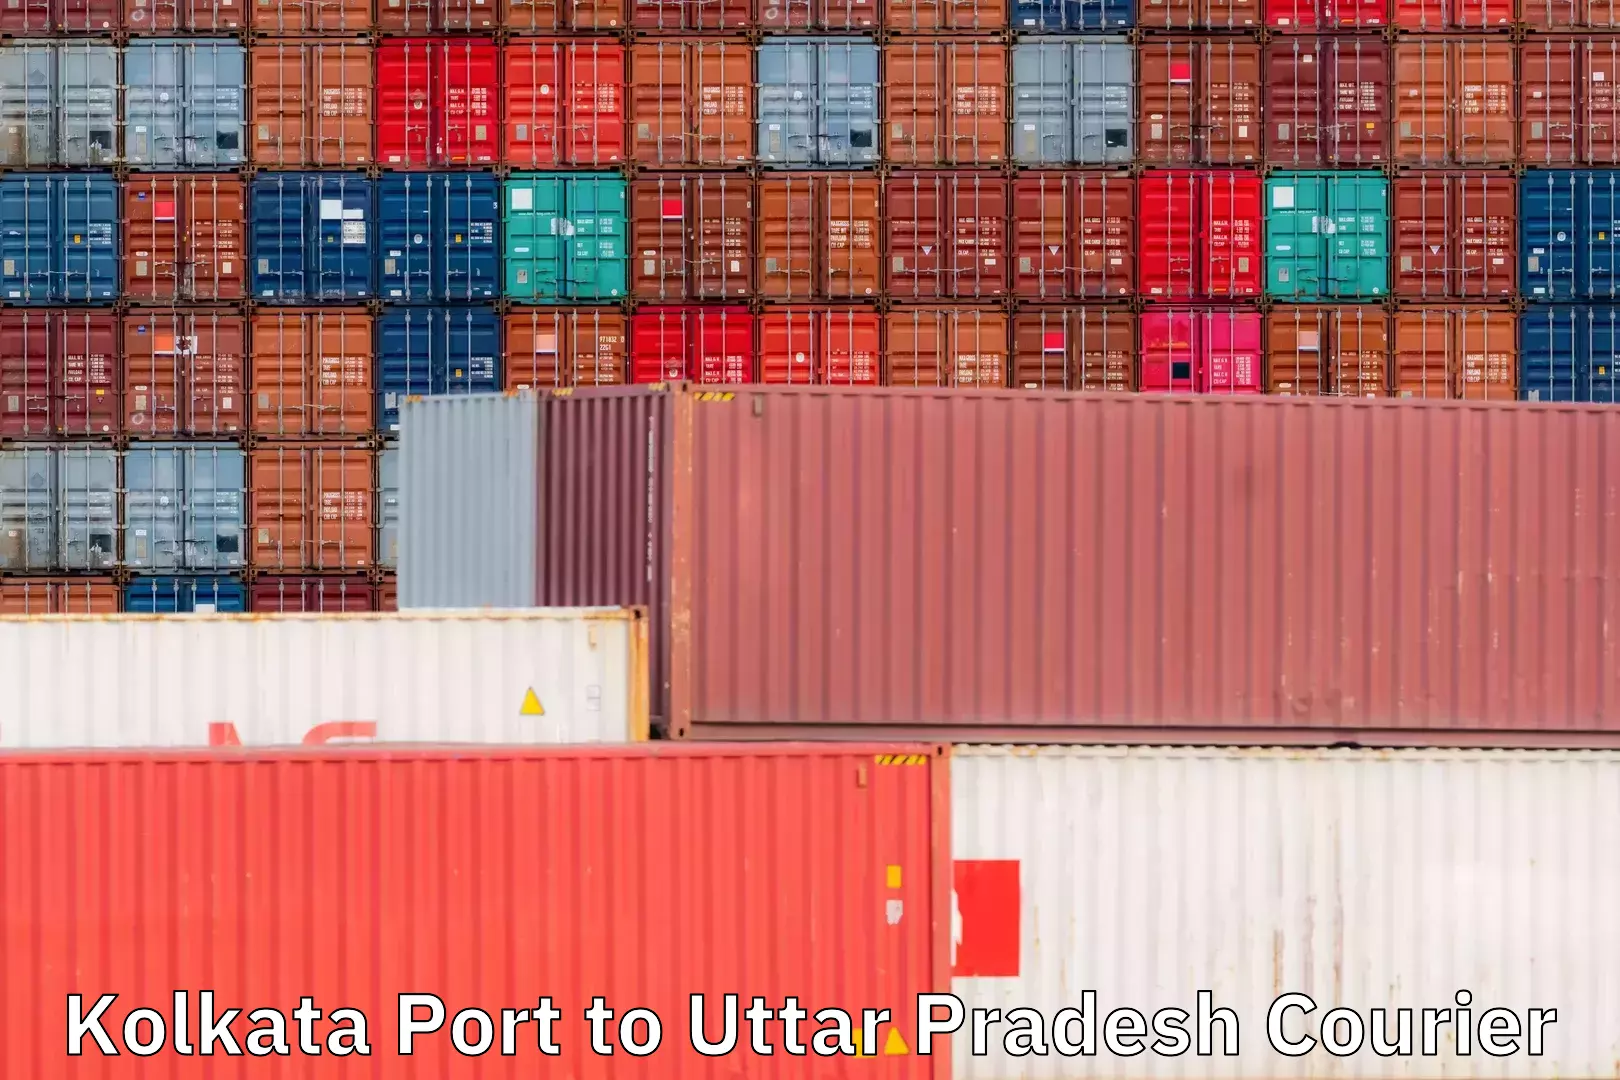 Customizable shipping options Kolkata Port to Uttar Pradesh